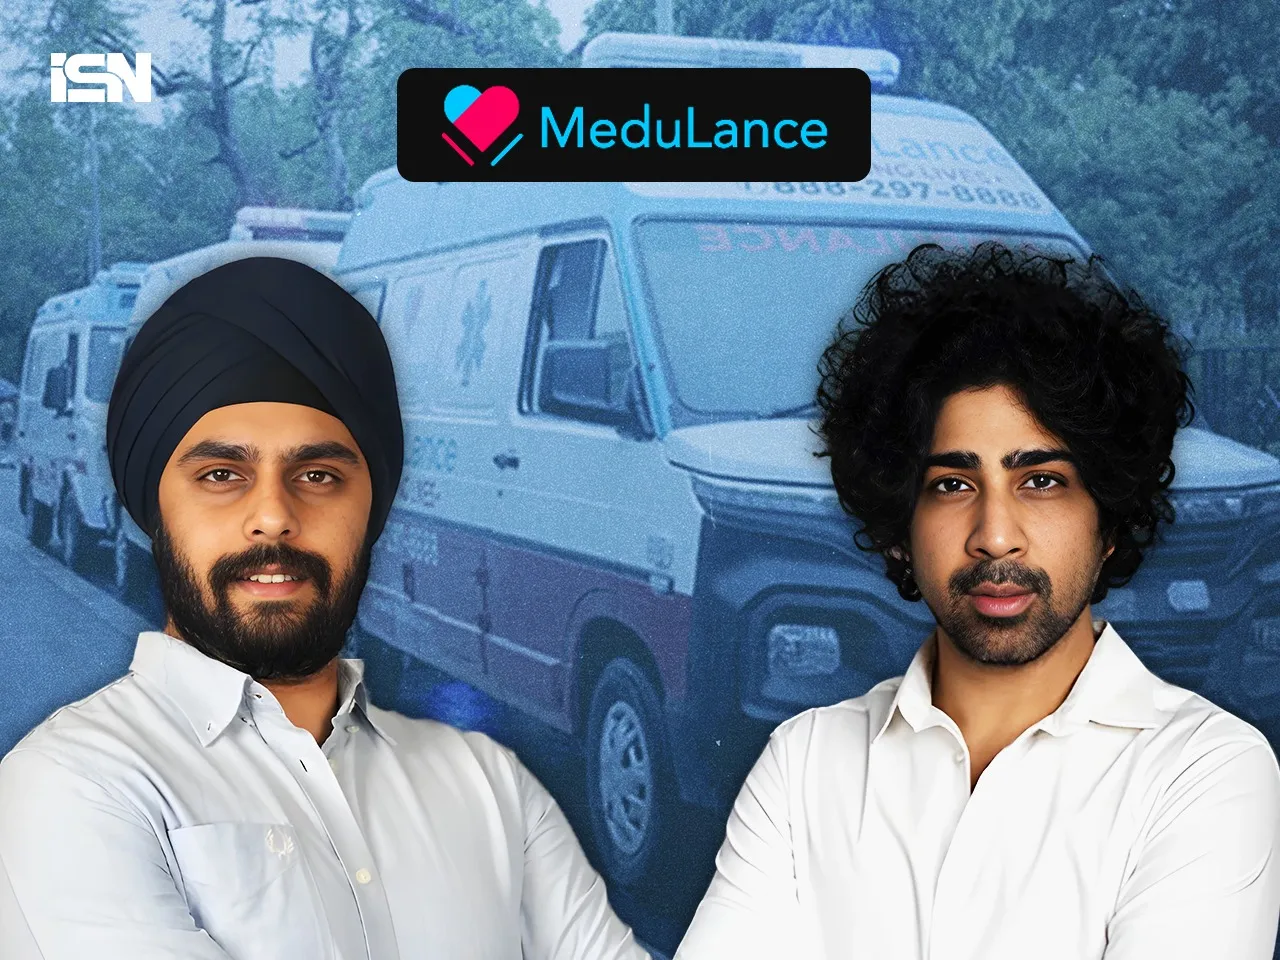 Medulance Co-founders Pranav Bajaj and Ravjot Singh Arora